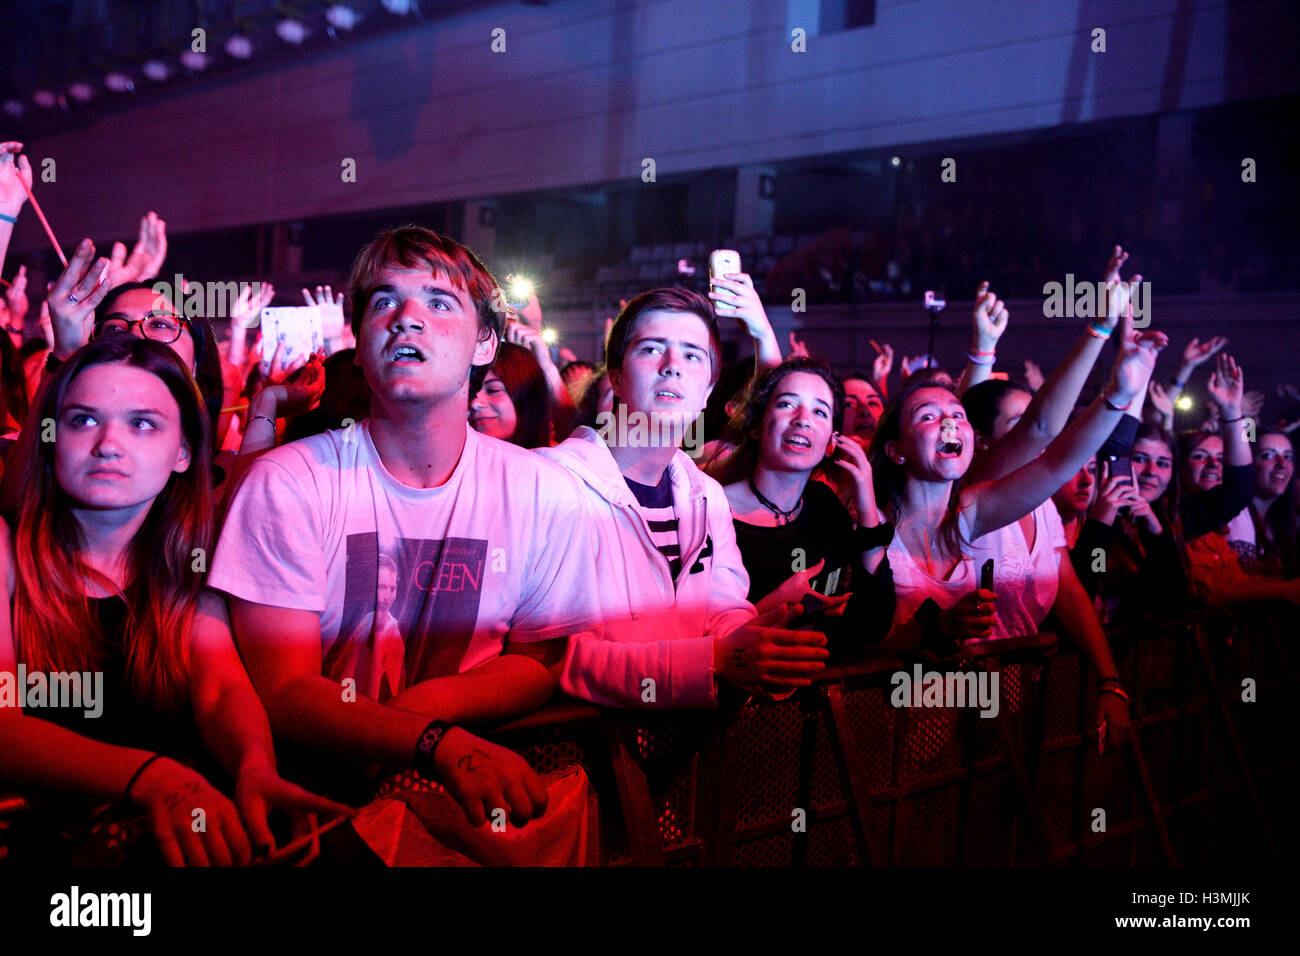 BARCELONA - mar 30: multitud en un concierto en el Sant Jordi Club estadio el 18 de marzo de 2015 en Barcelona, España. Foto de stock